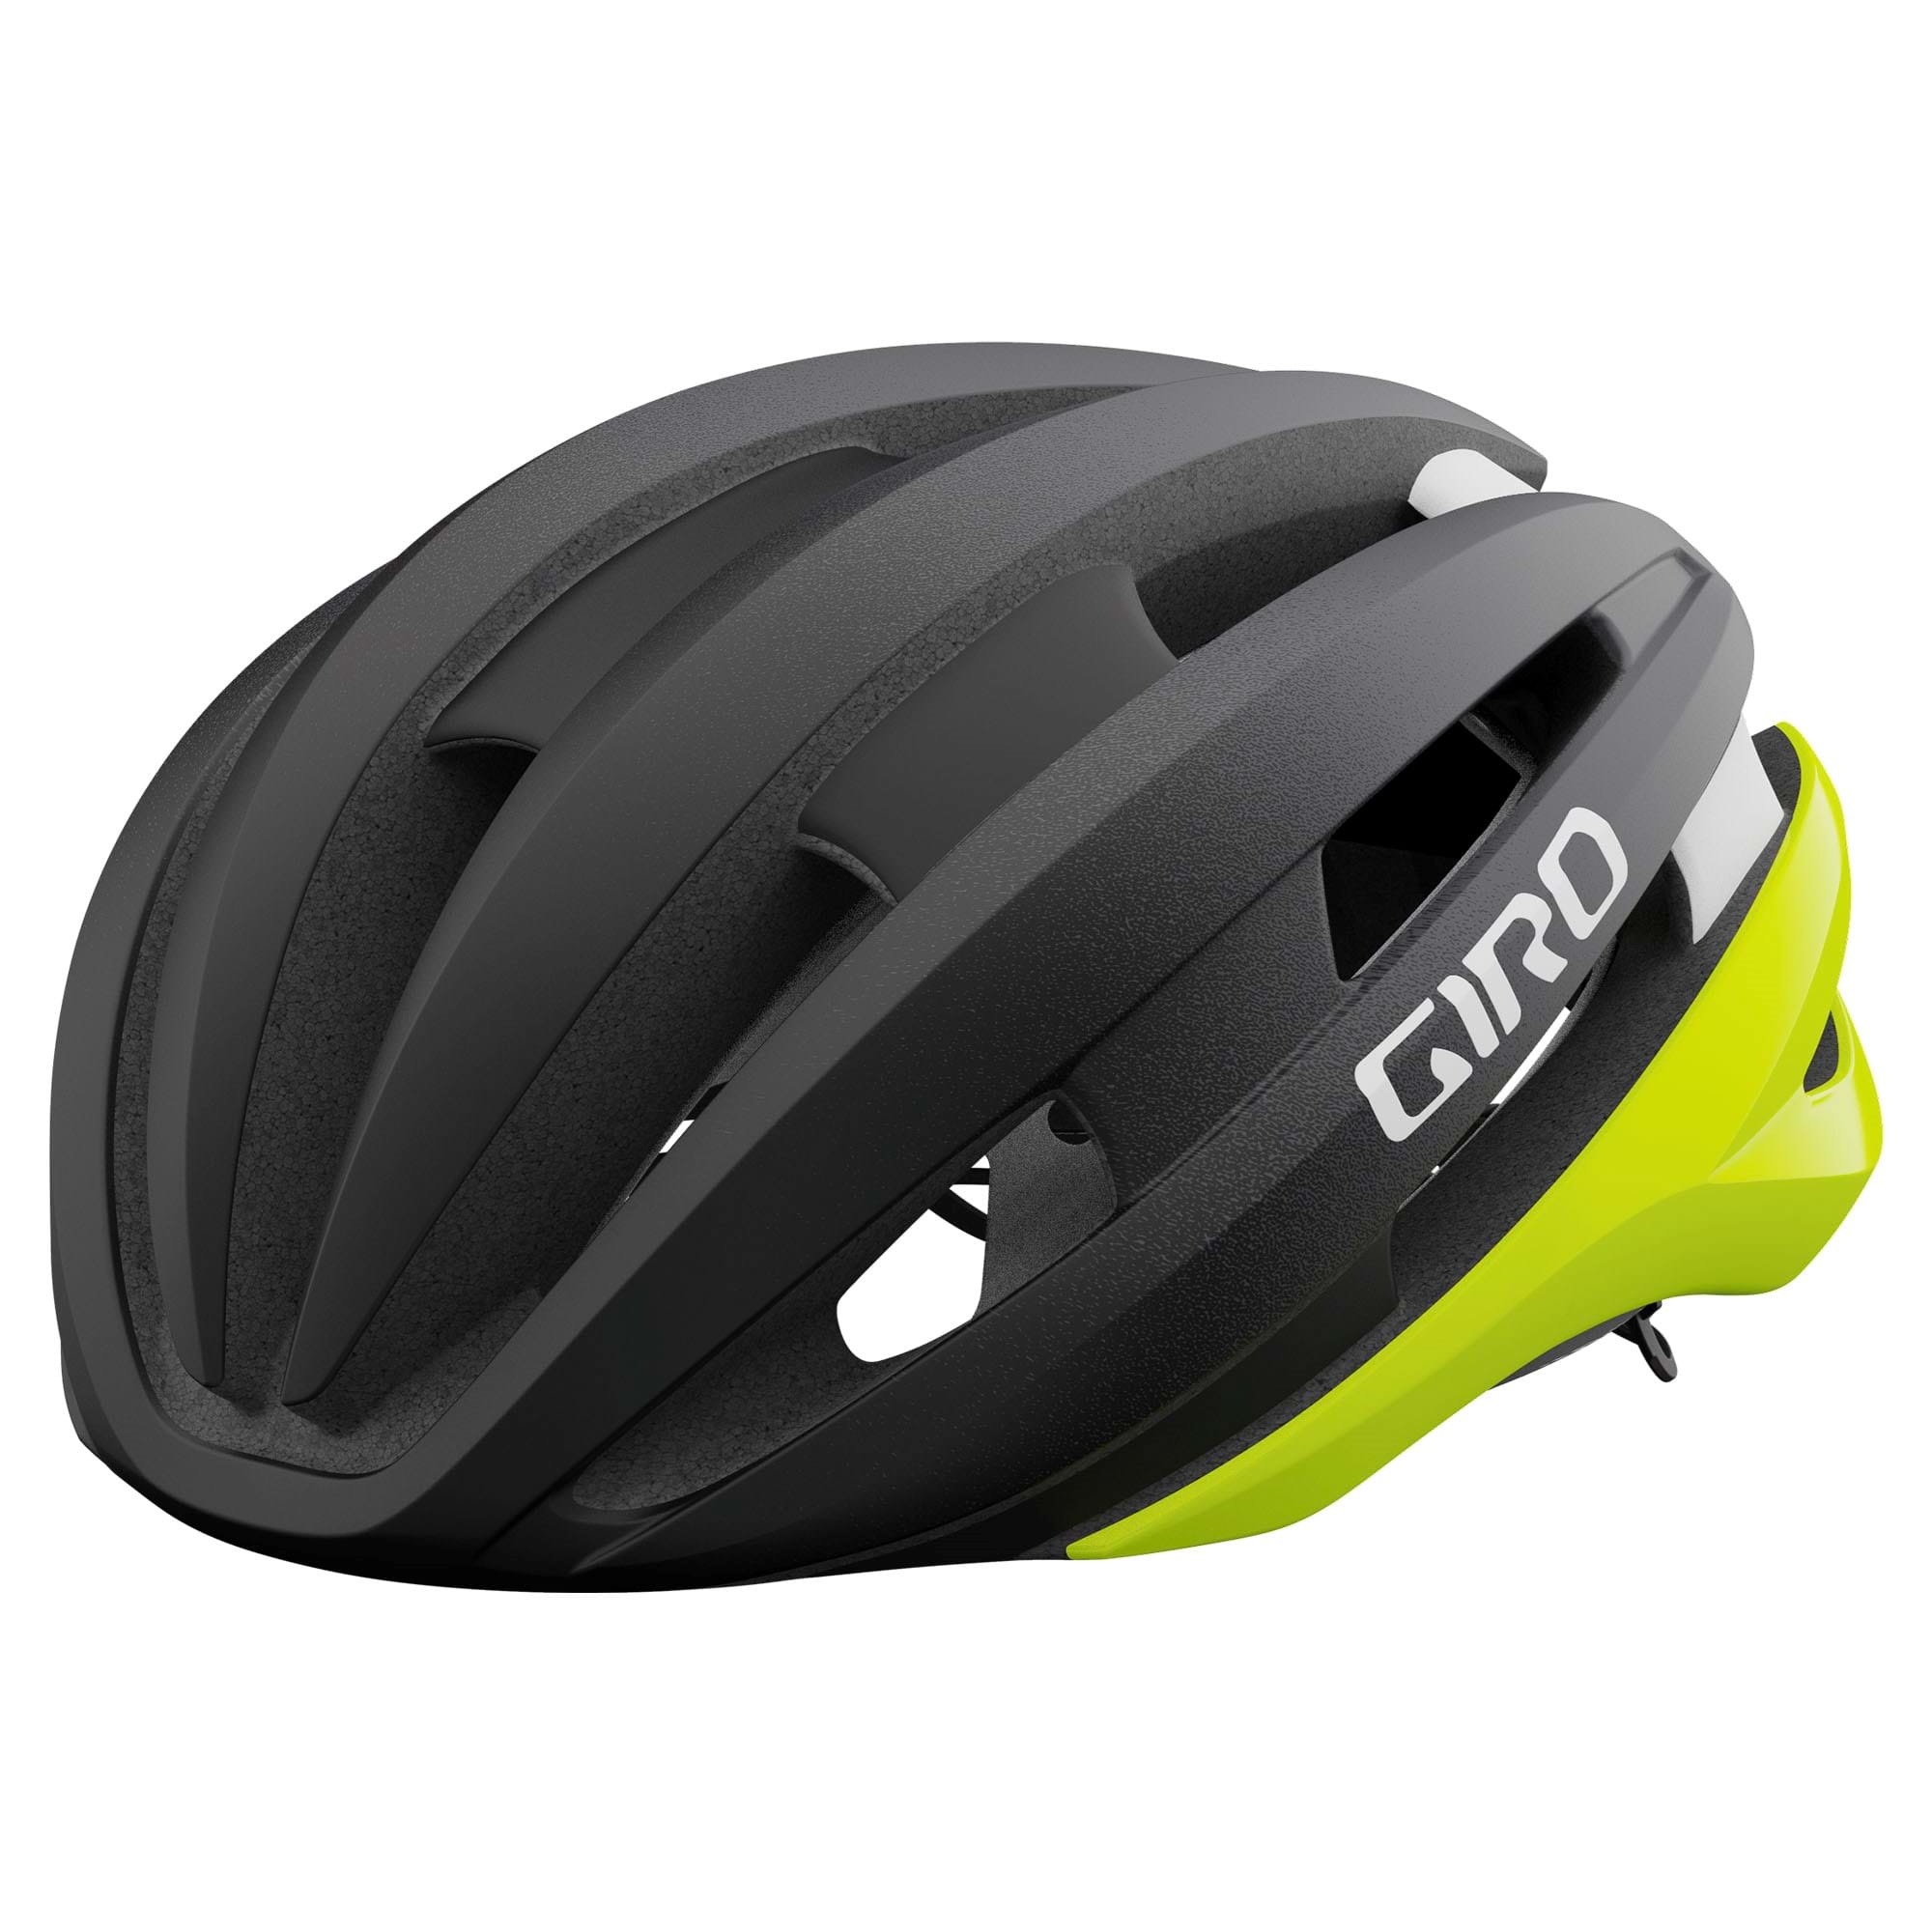 Giro Synthe MIPS II Helmet